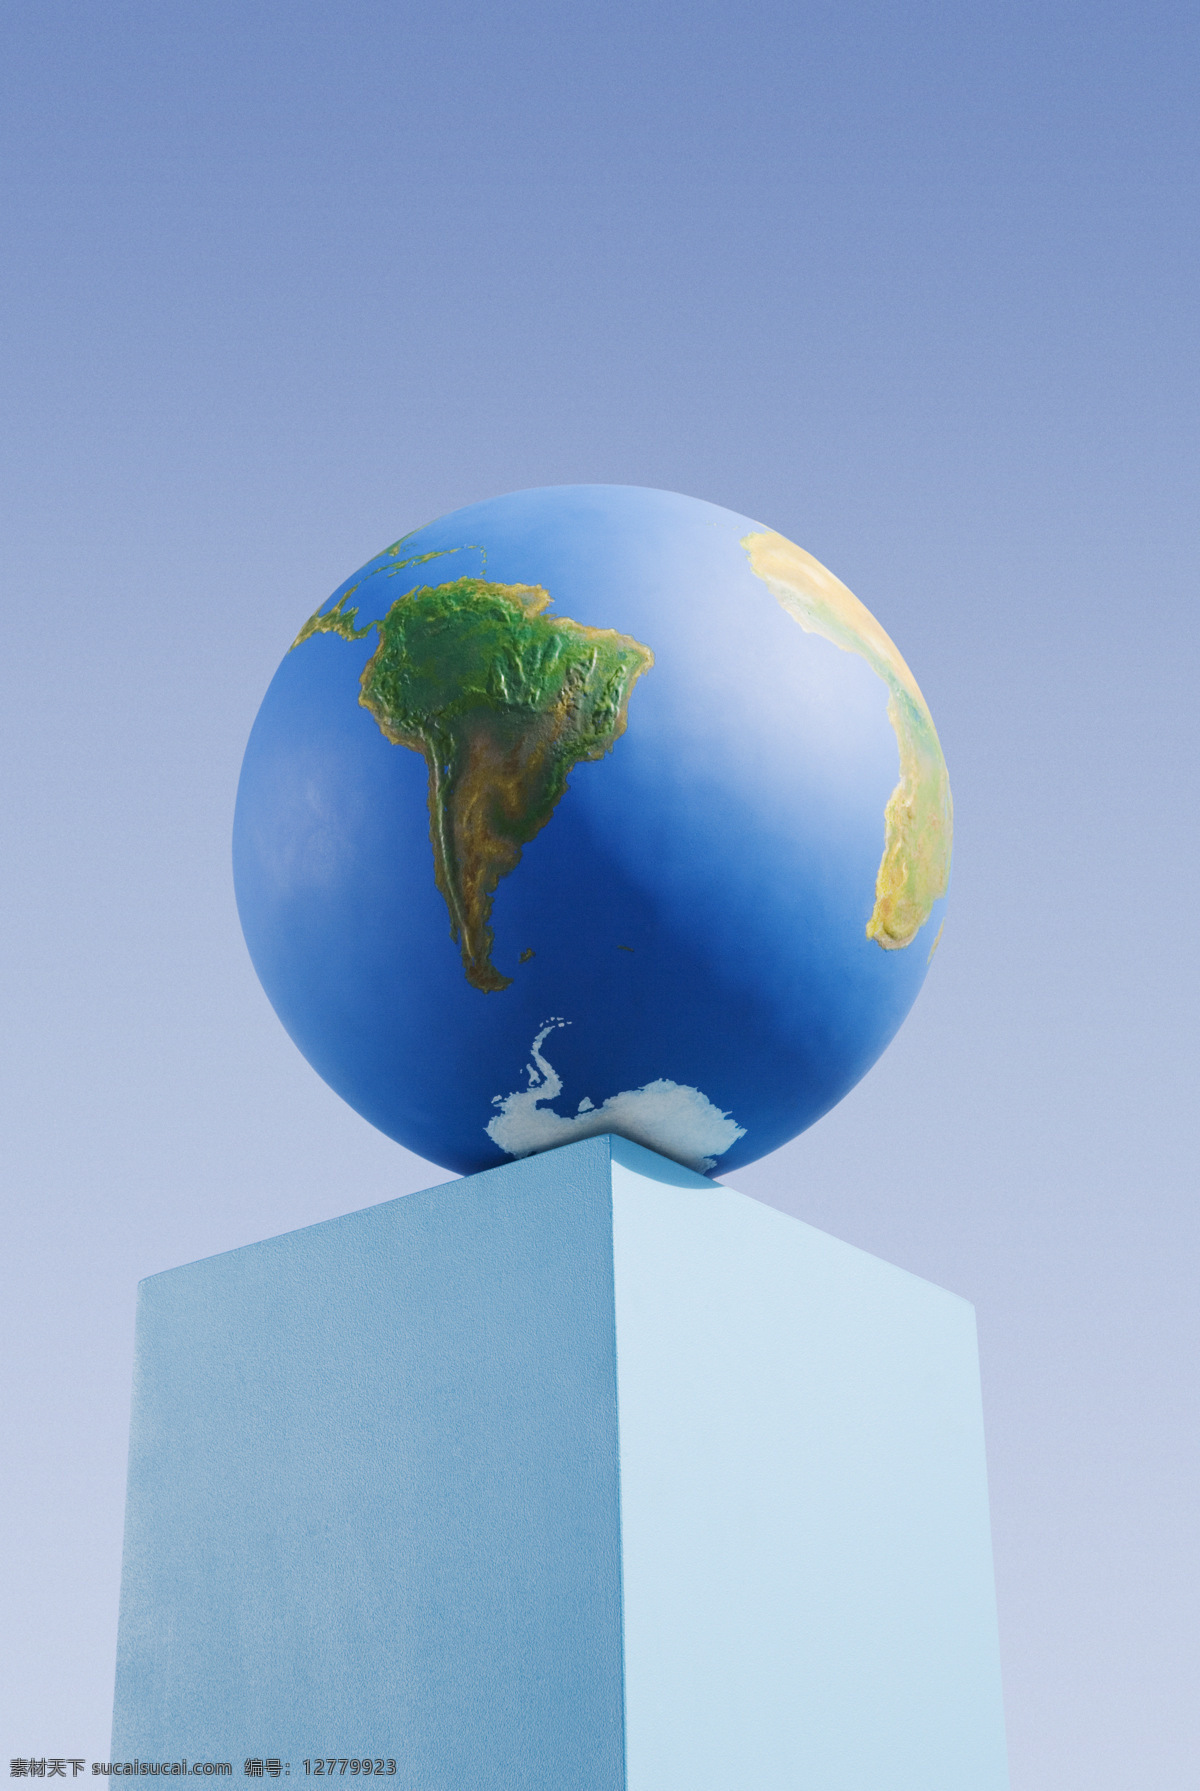 蓝色 柱子 地球 摄影图片 商务 金融贸易 全球化 世界地图 高清图片 创意设计 创意摄影 广告设计素材 地球素材 商业素材 蓝色地球 蓝色柱子 天空背景 地球图片 环境家居